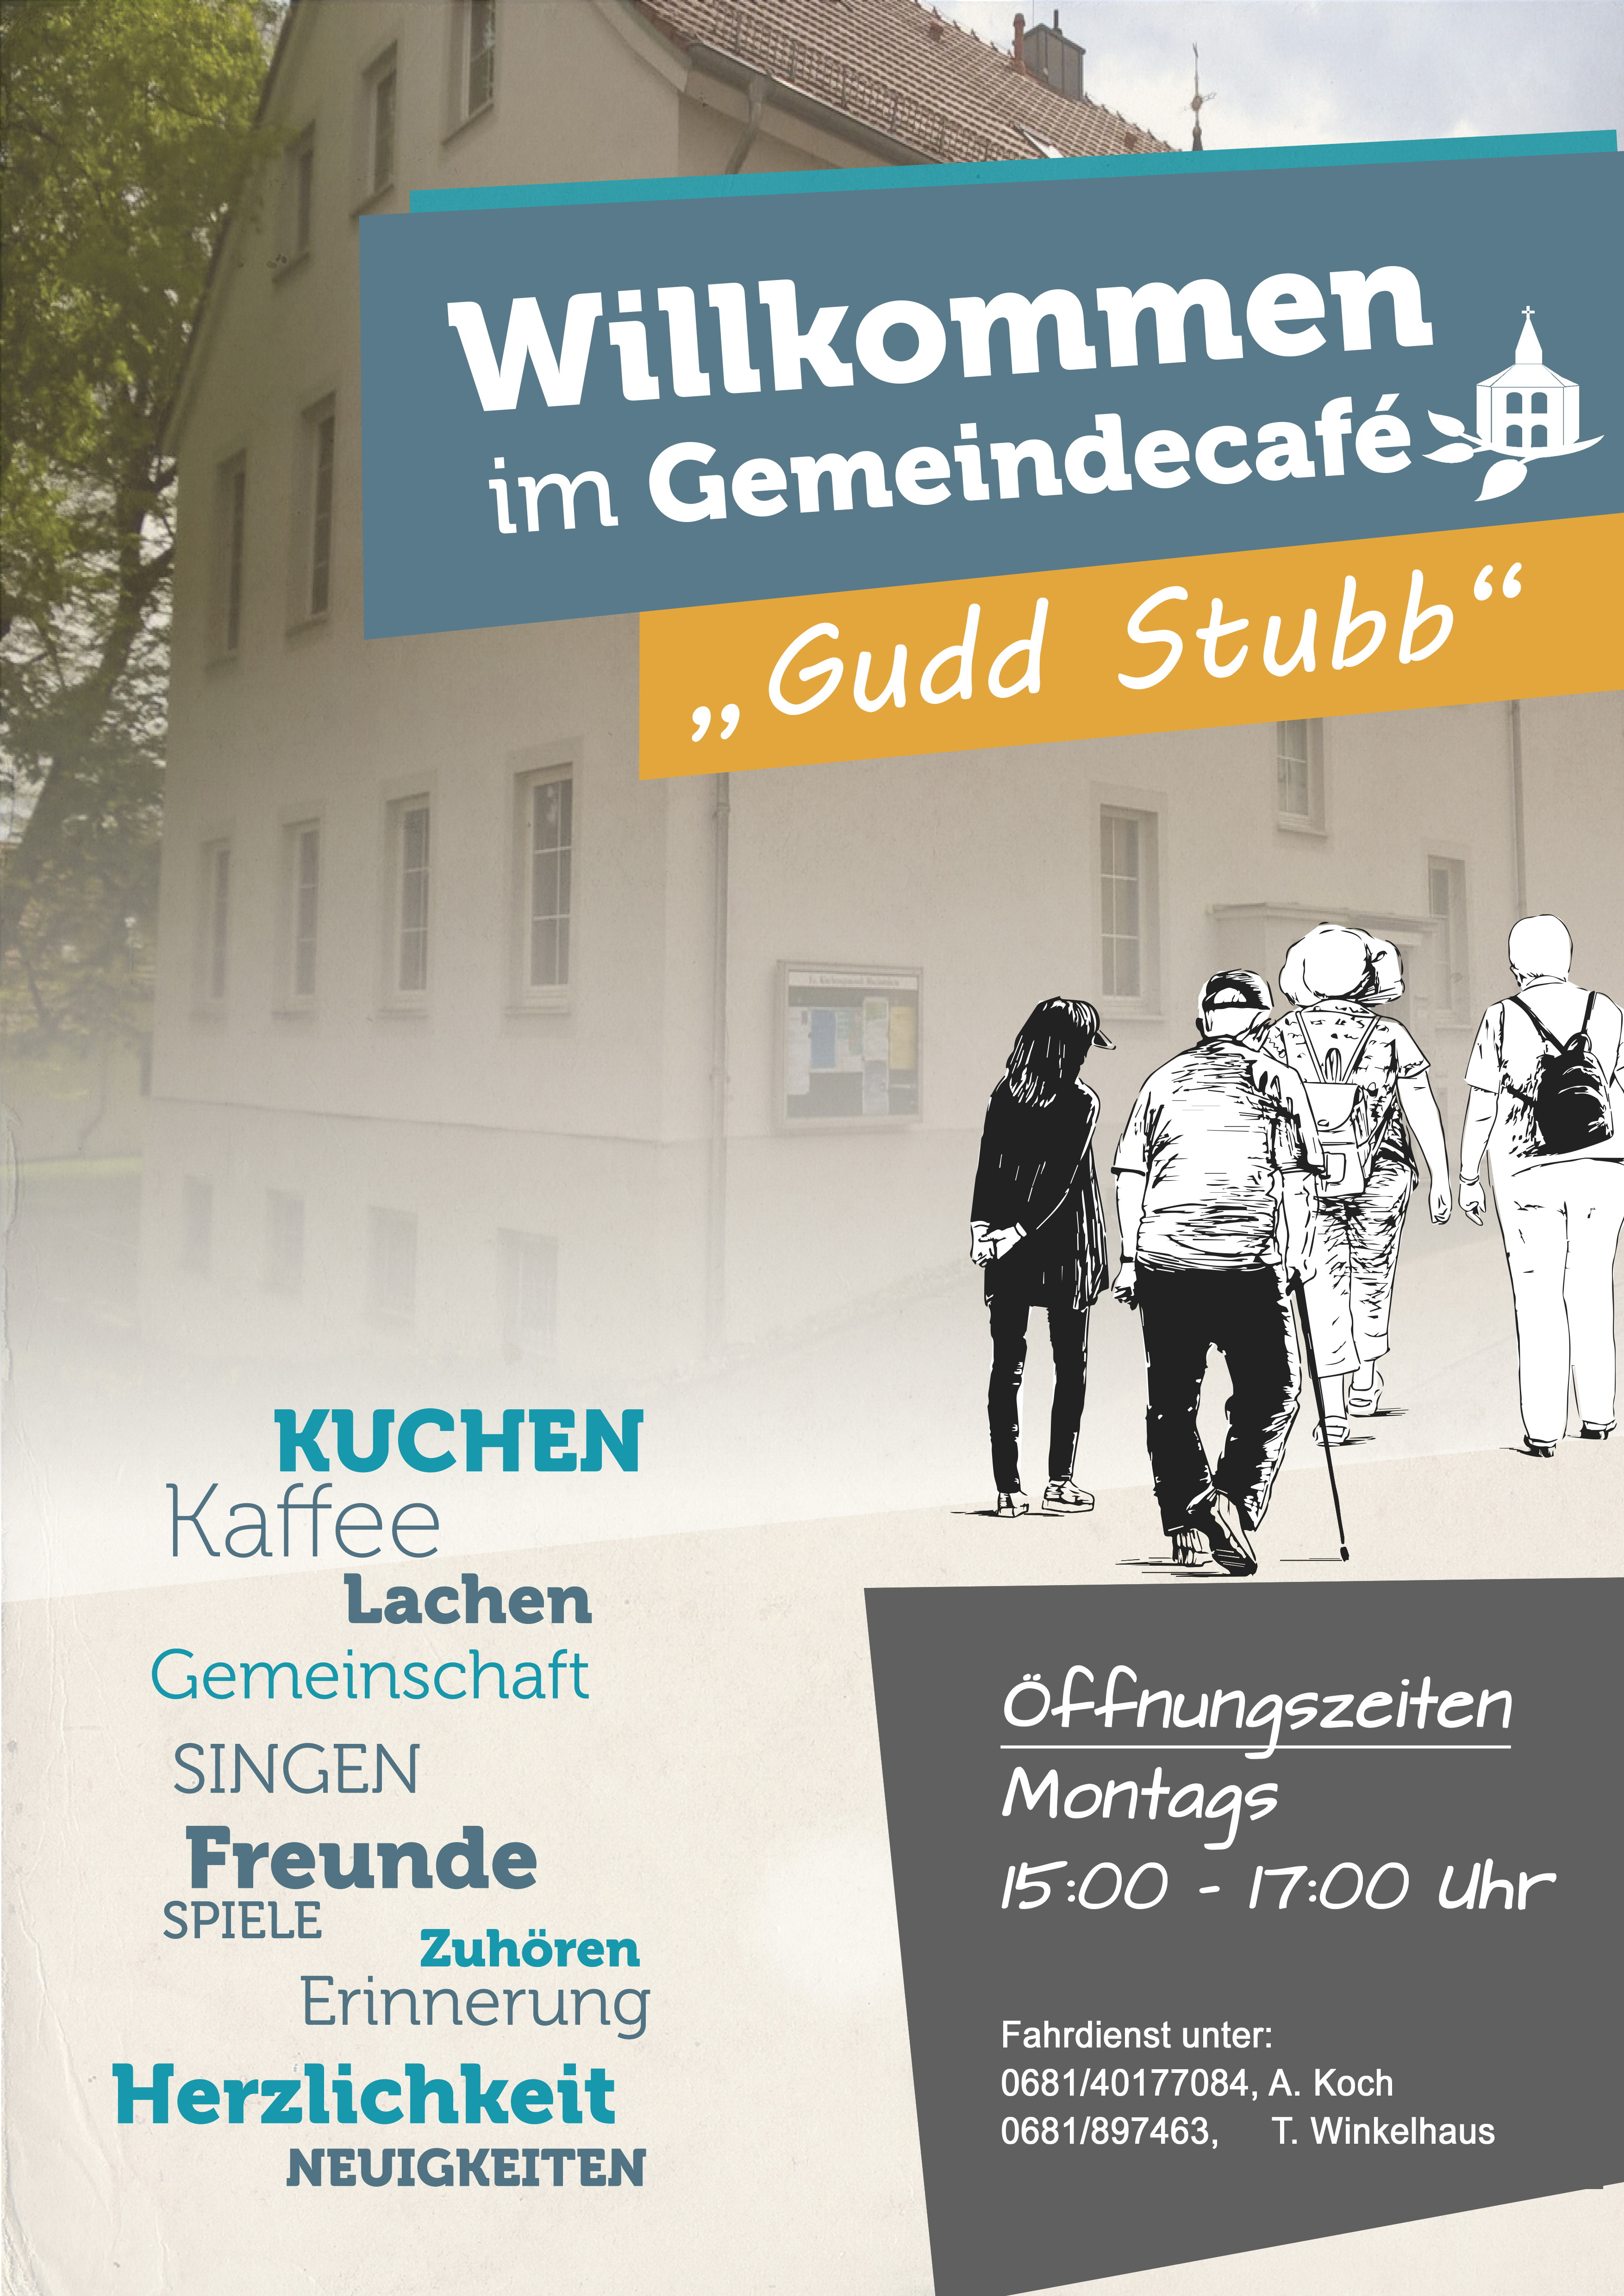 Gudd Stubb- Bischmisheim